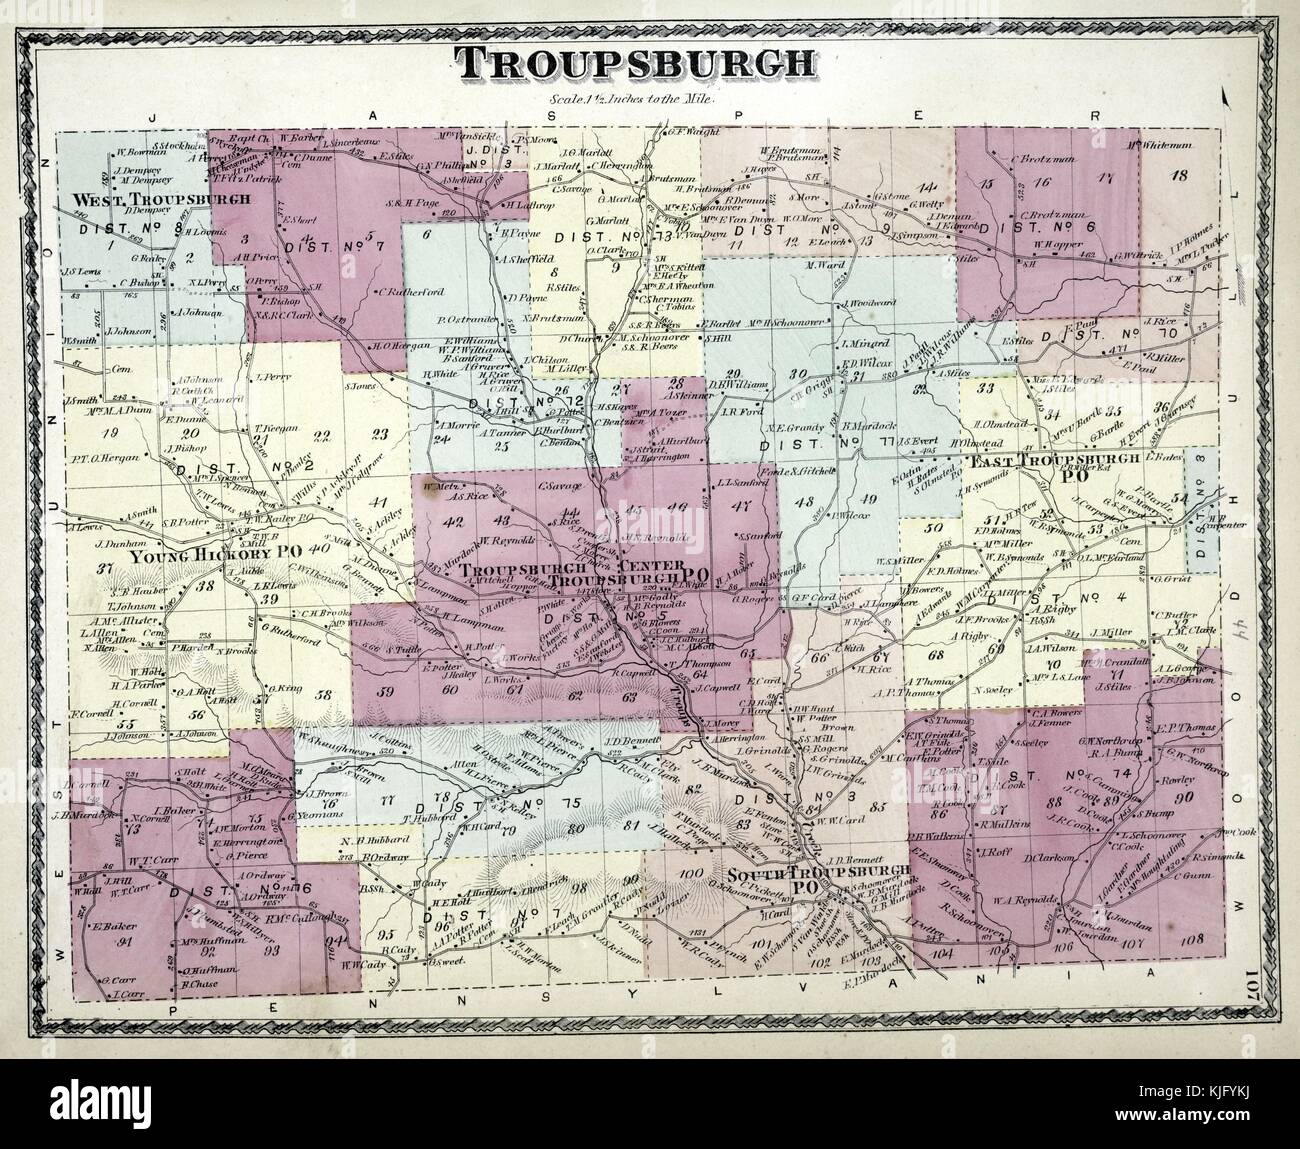 Image cartographique gravée d'un atlas, avec légende originale indiquant 'Troupsburgh Township', 1873. De la Bibliothèque publique de New York. Banque D'Images